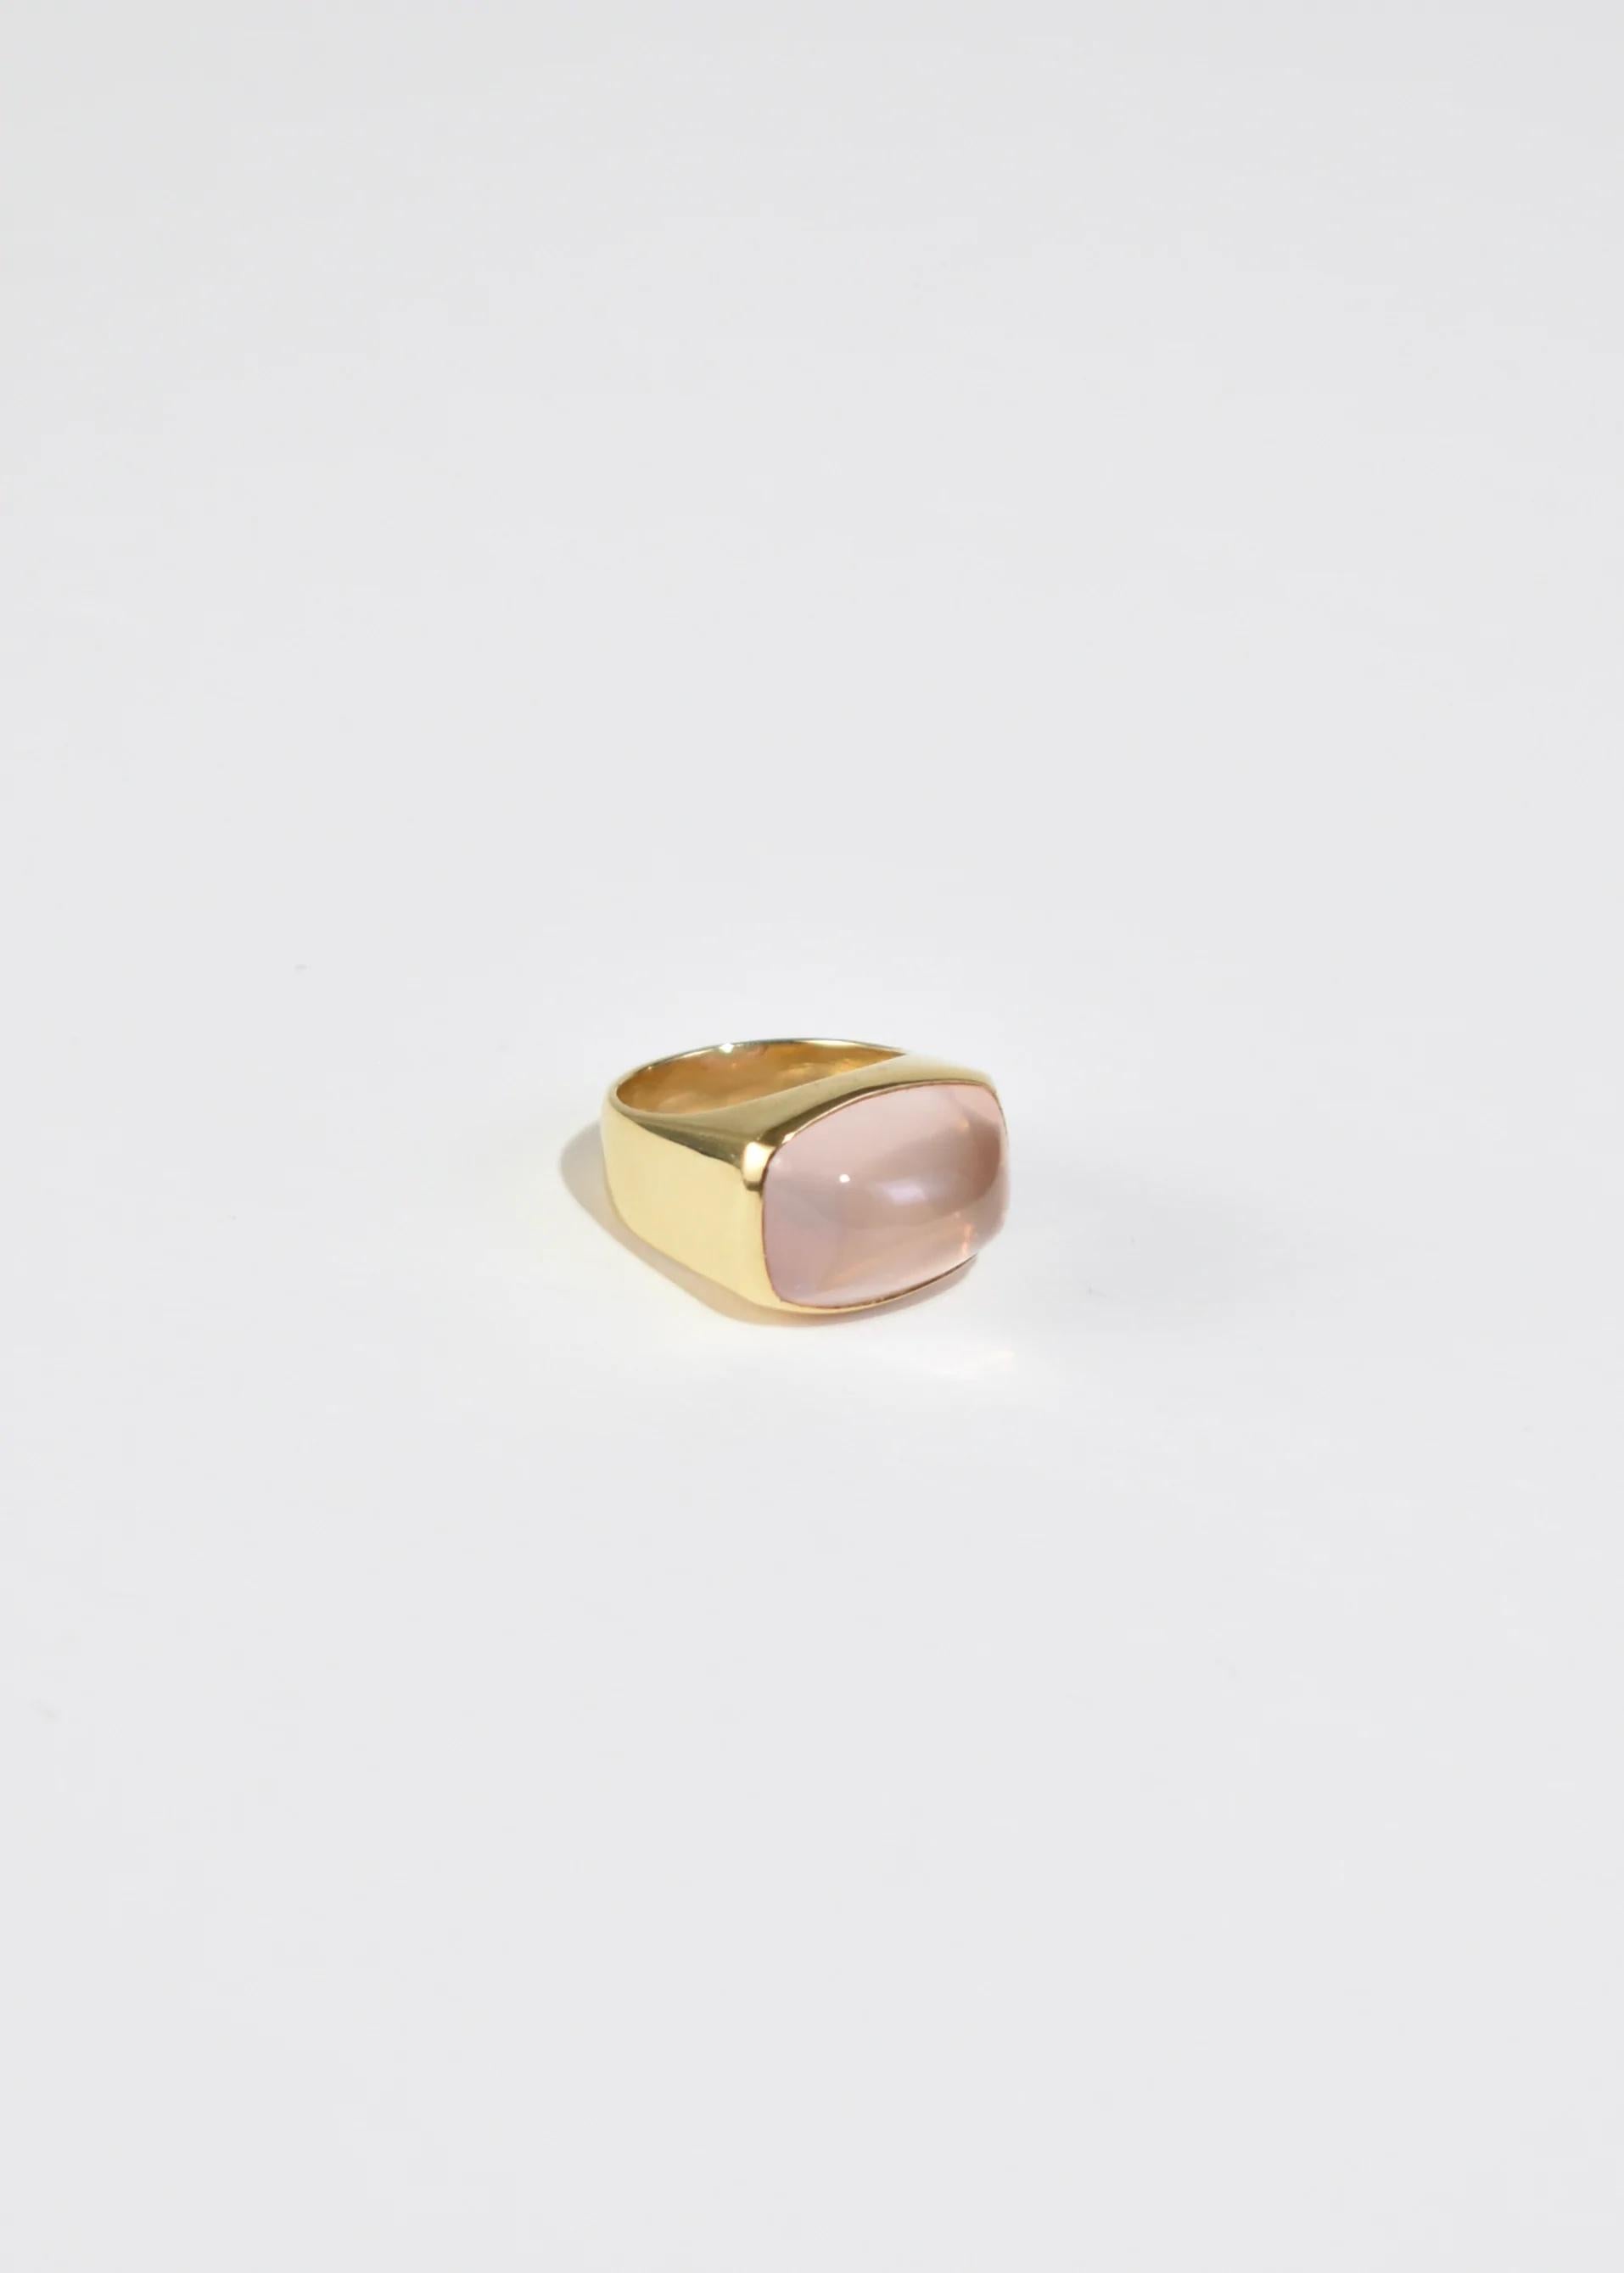 rose quartz ring for man